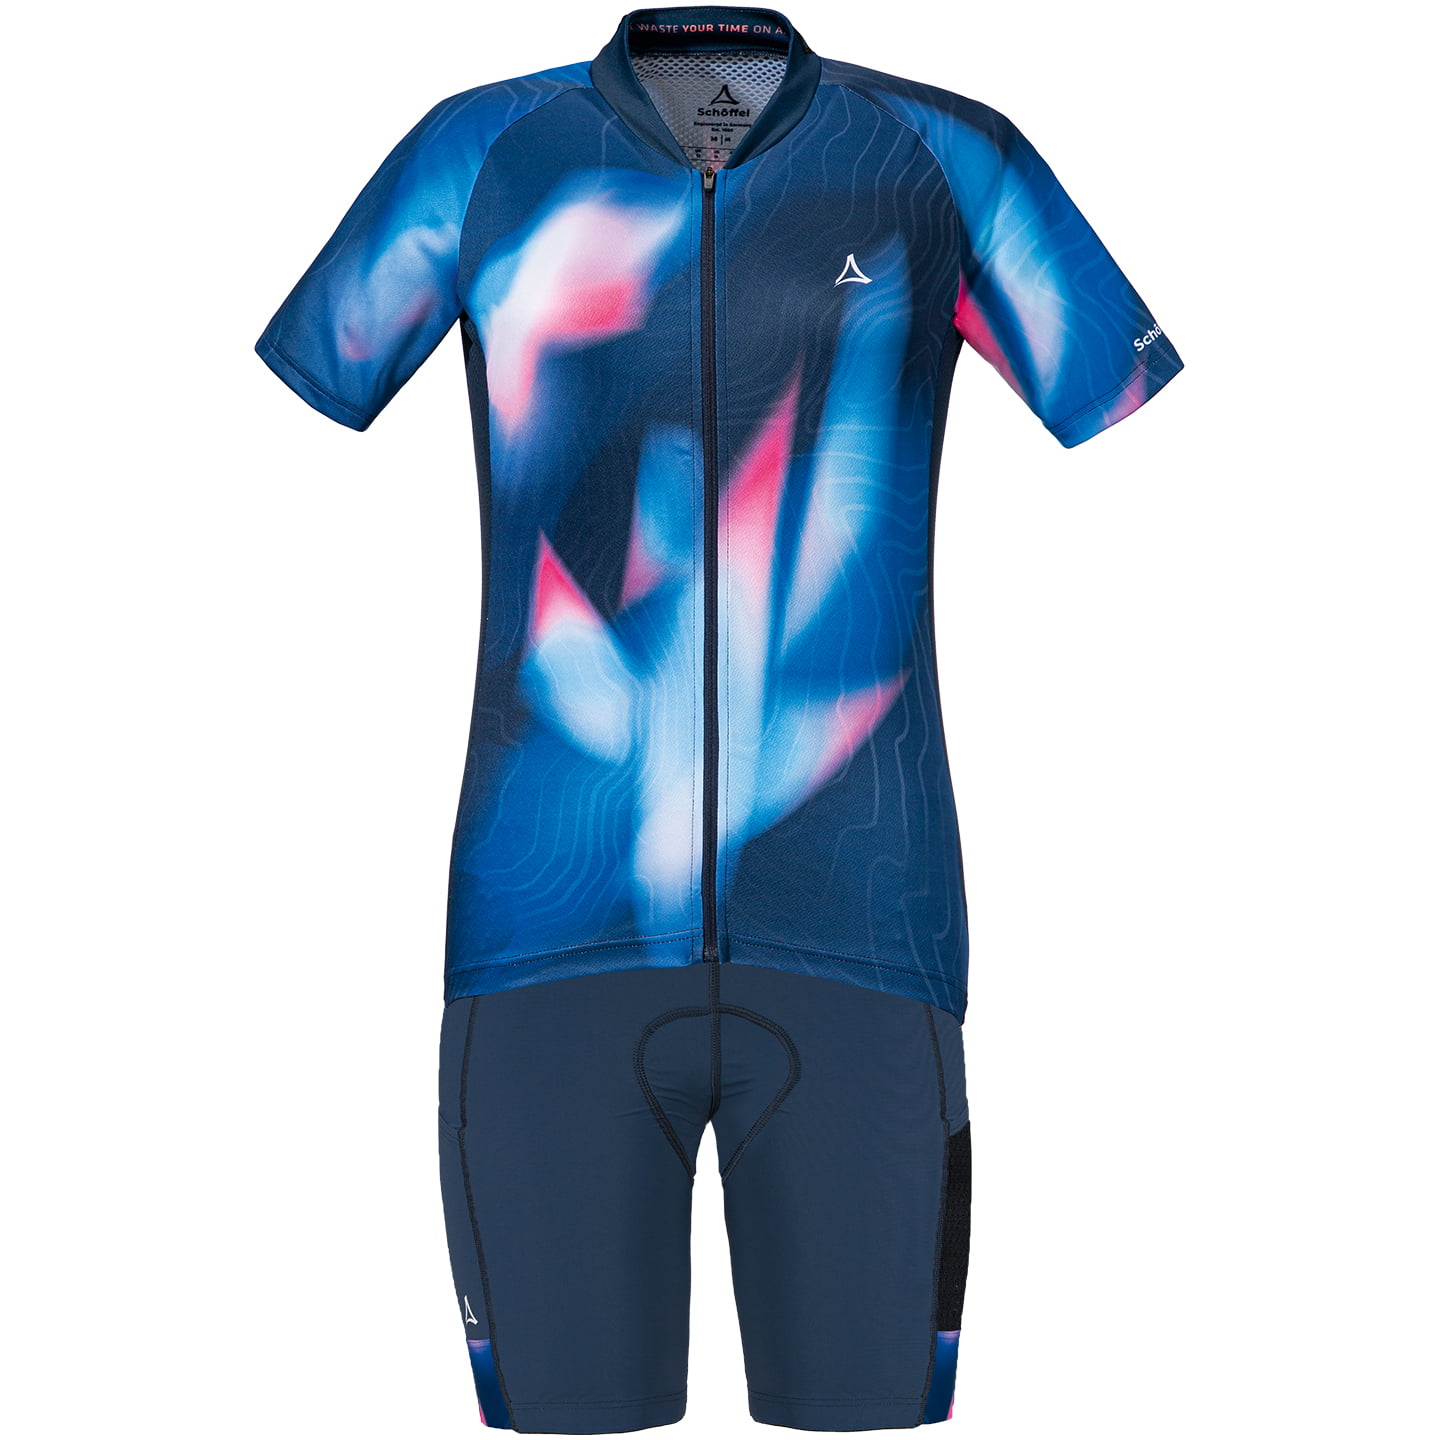 SCHOFFEL Vertine Women’s Set (cycling jersey + cycling shorts), Cycling clothing